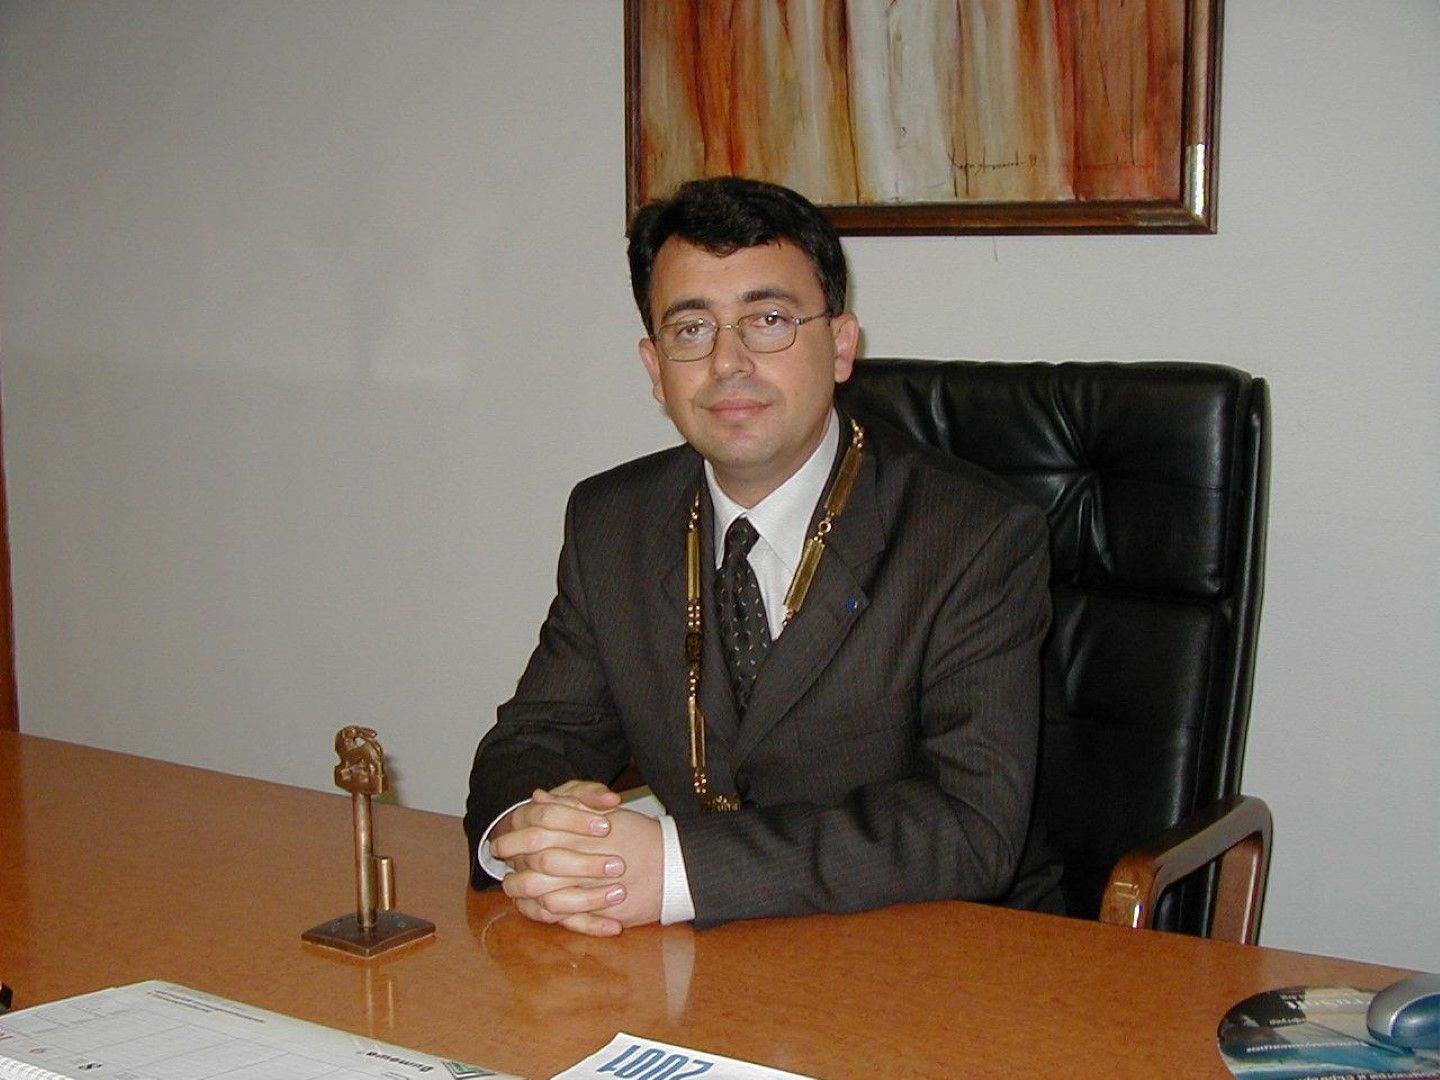 Общините са едни от най-големите работодатели, заяви кметът на Кърджали и зам.-председател на НСОРБ Хасан Азис